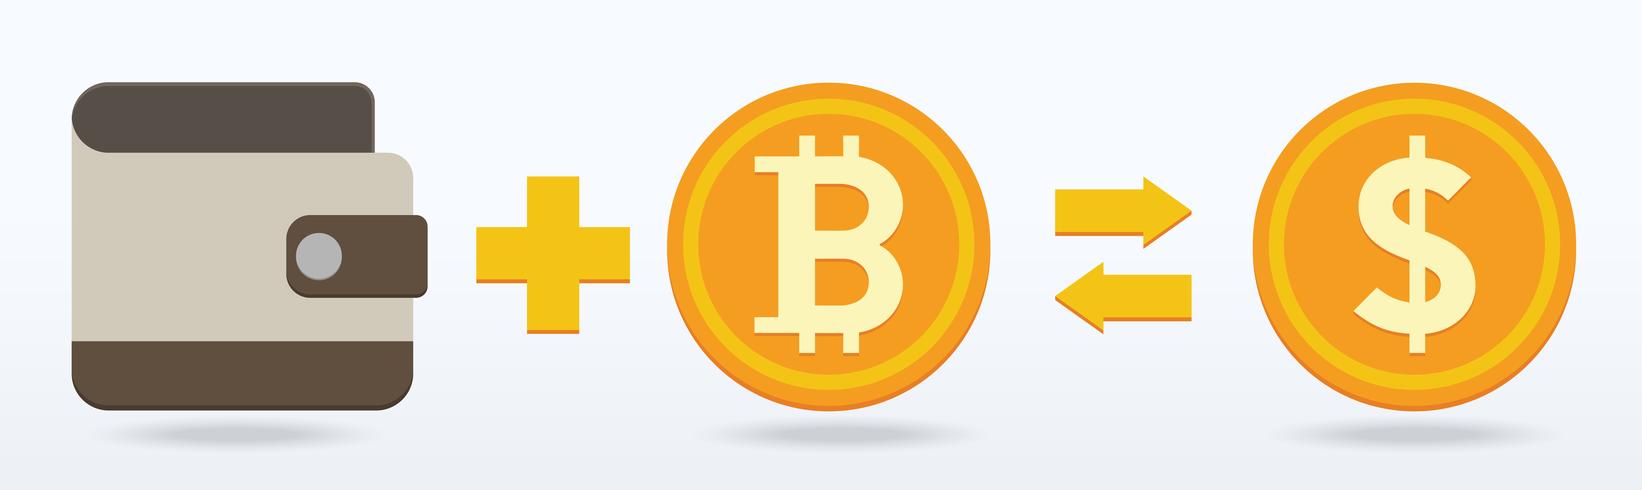 Design plano Bitcoin, moeda digital ou virtual vetor